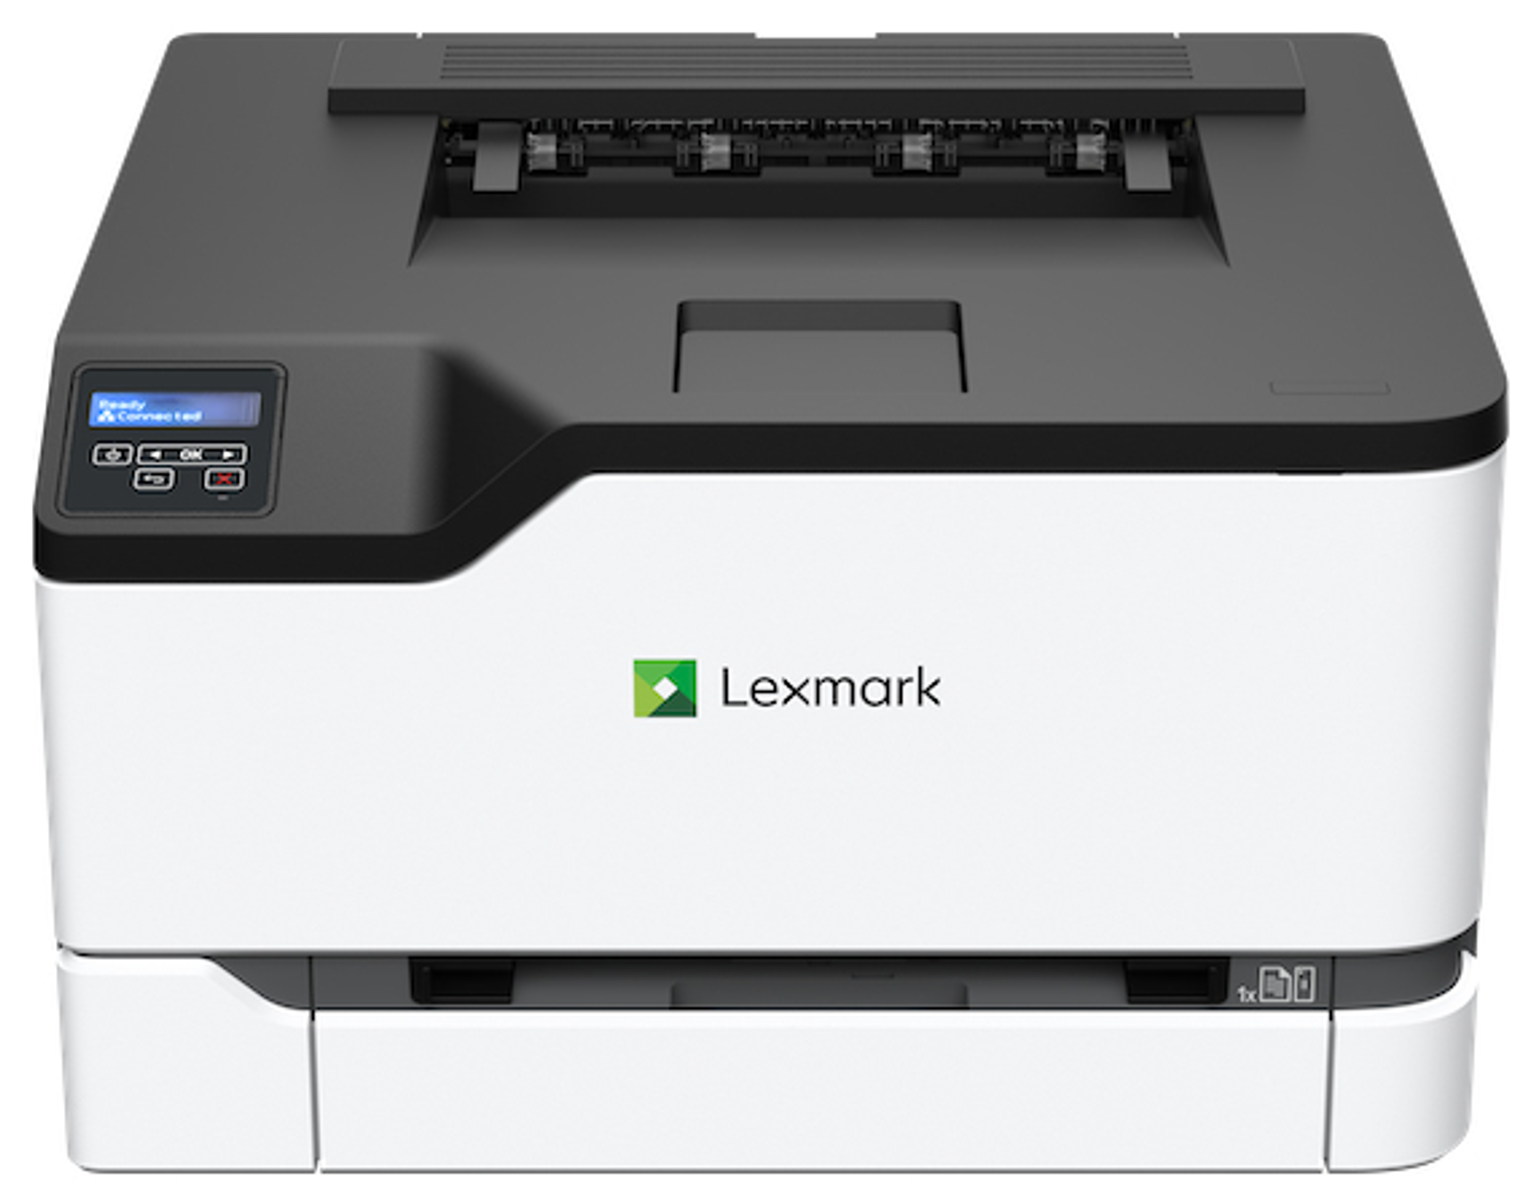 LAN, Laser LEXMARK Duplex, WLAN C3326dw Farb-Laserdrucker Drucker, Multifunktionsgeräte und USB, WLAN) Drucker (A4,